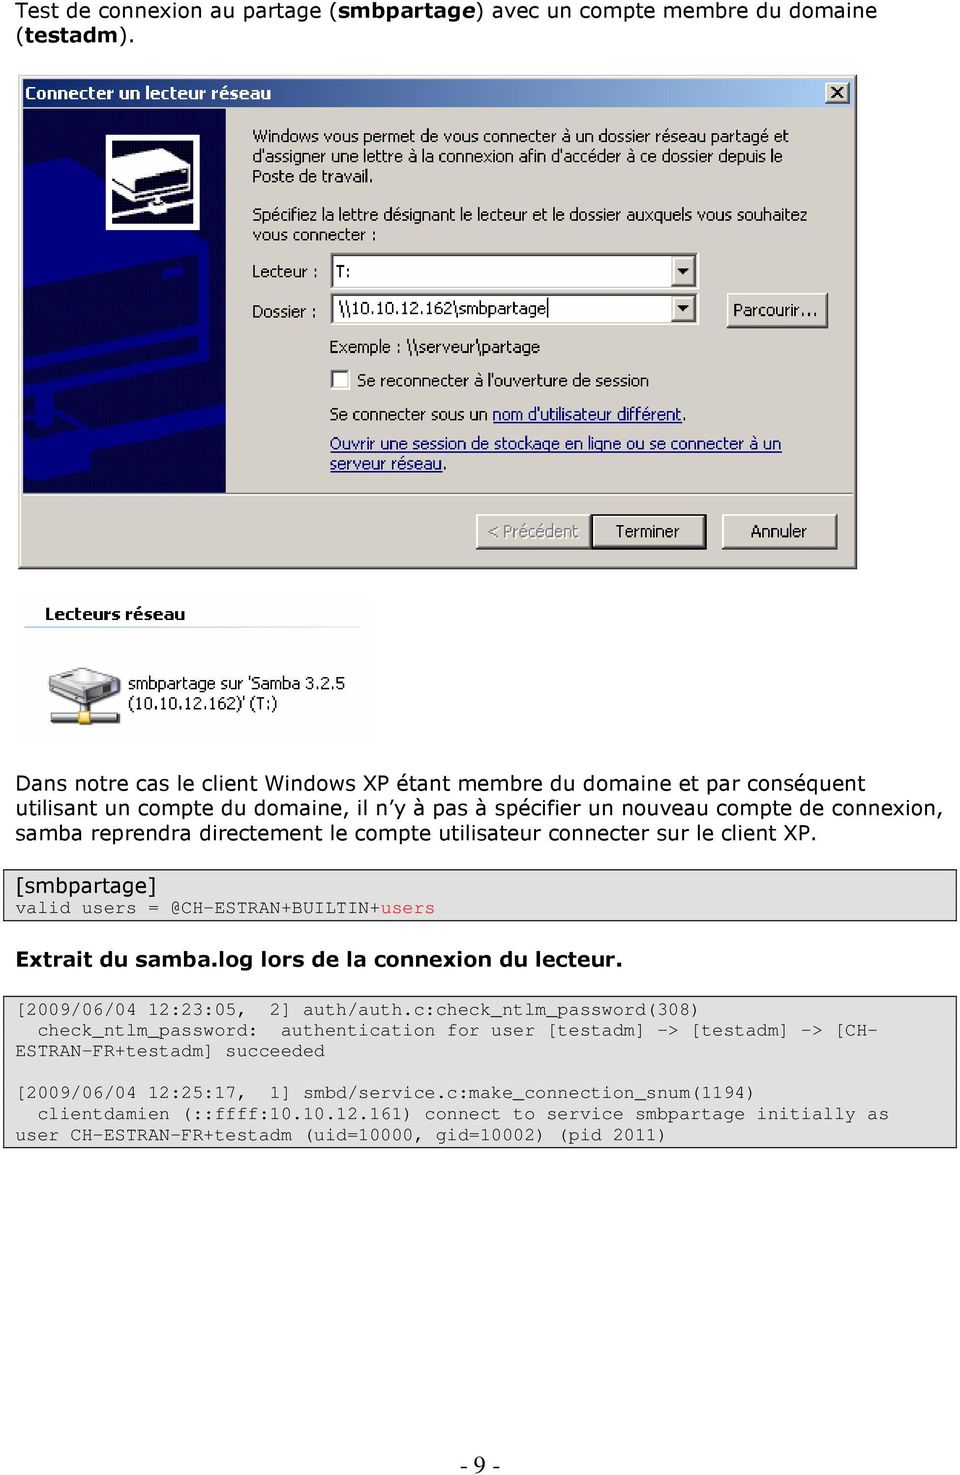 compte utilisateur connecter sur le client XP. [smbpartage] valid users = @CH-ESTRAN+BUILTIN+users Extrait du samba.log lors de la connexion du lecteur. [2009/06/04 12:23:05, 2] auth/auth.